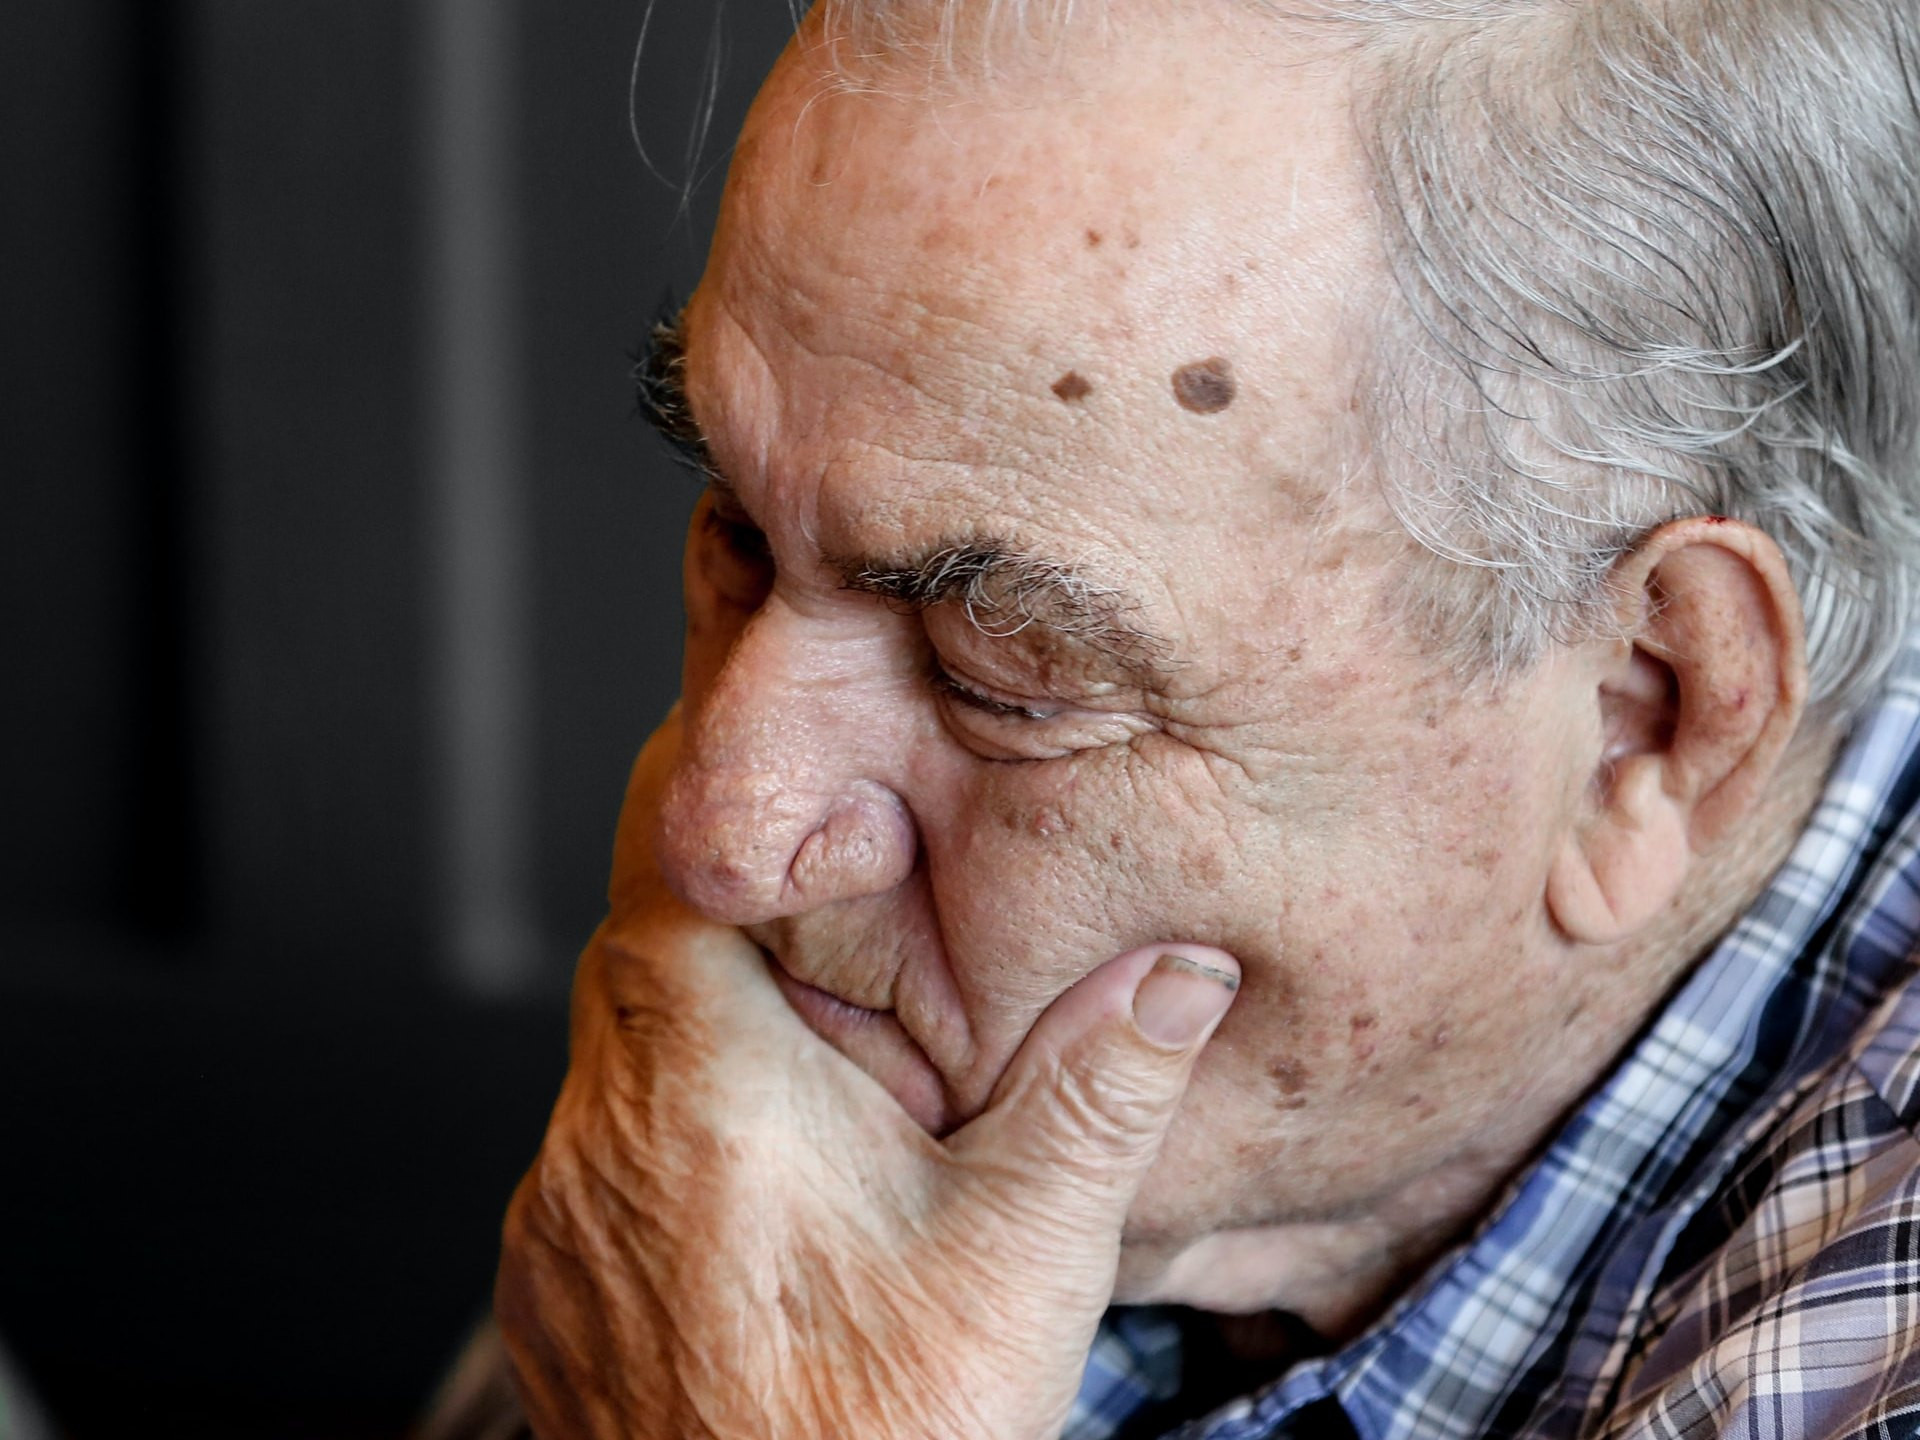 Z demenco se bori več kot 55 milijonov ljudi in njihovih svojcev.